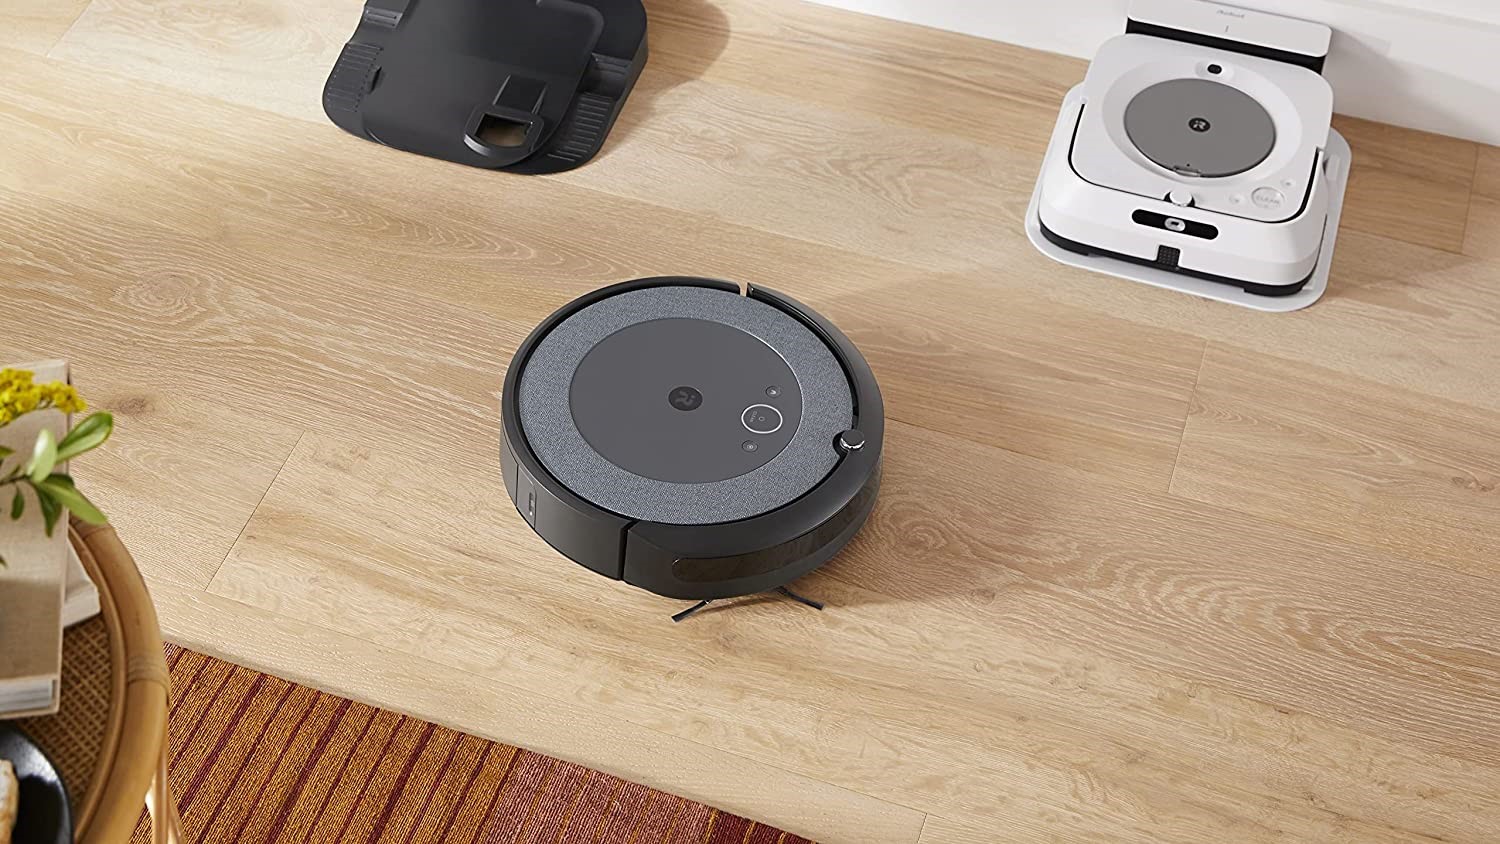 iRobot Roomba on hardwood floor